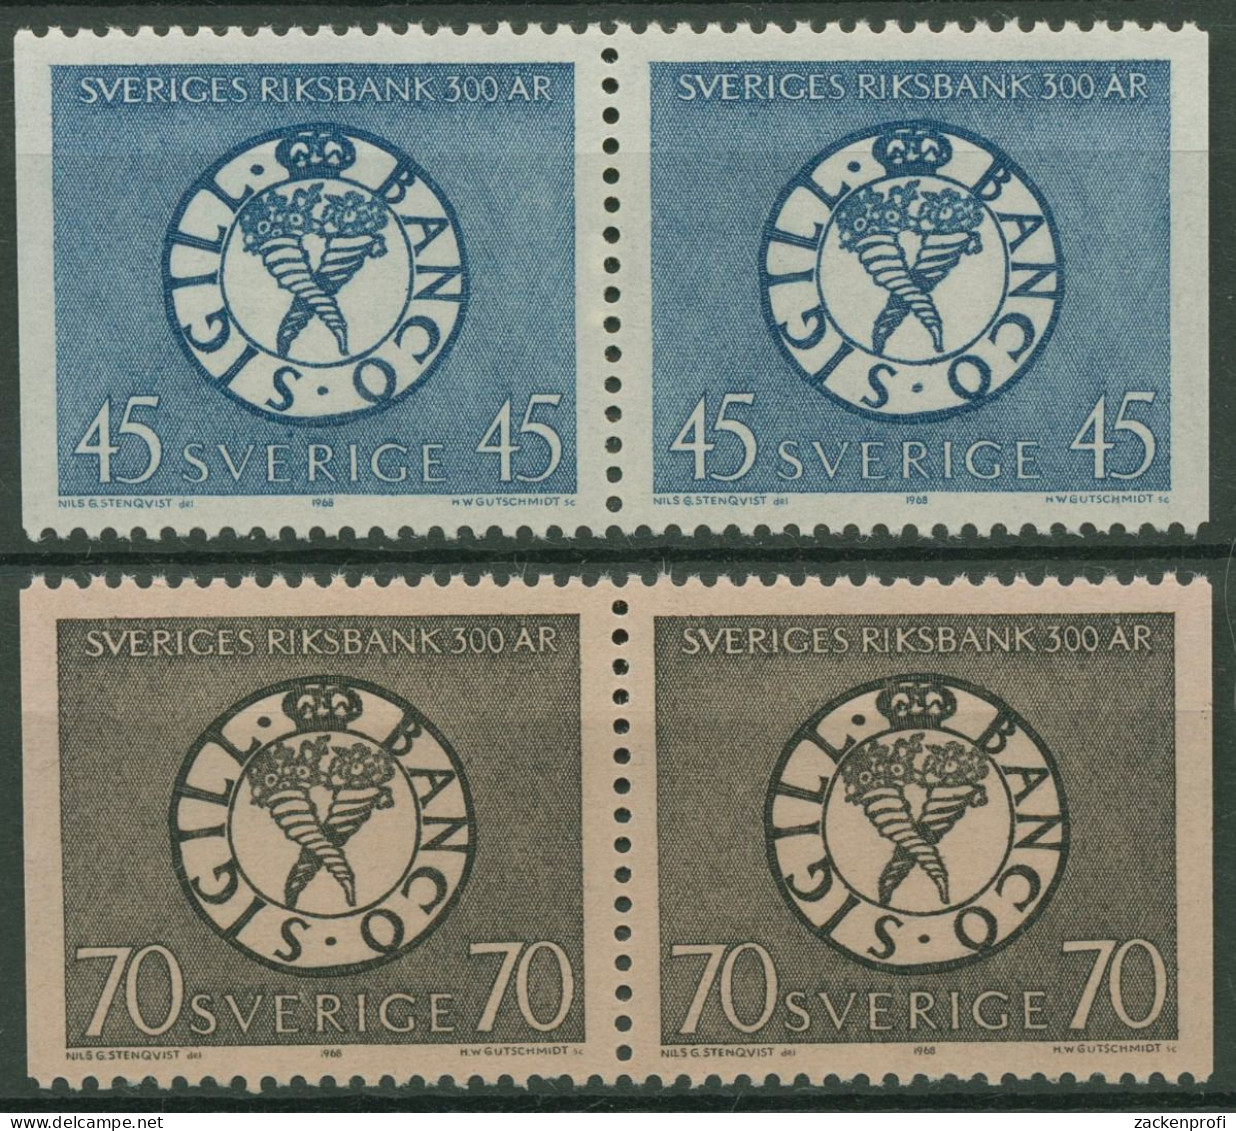 Schweden 1968 Schwedische Reichsbank Siegel 603/04 Dl/Dr Paare Postfrisch - Neufs